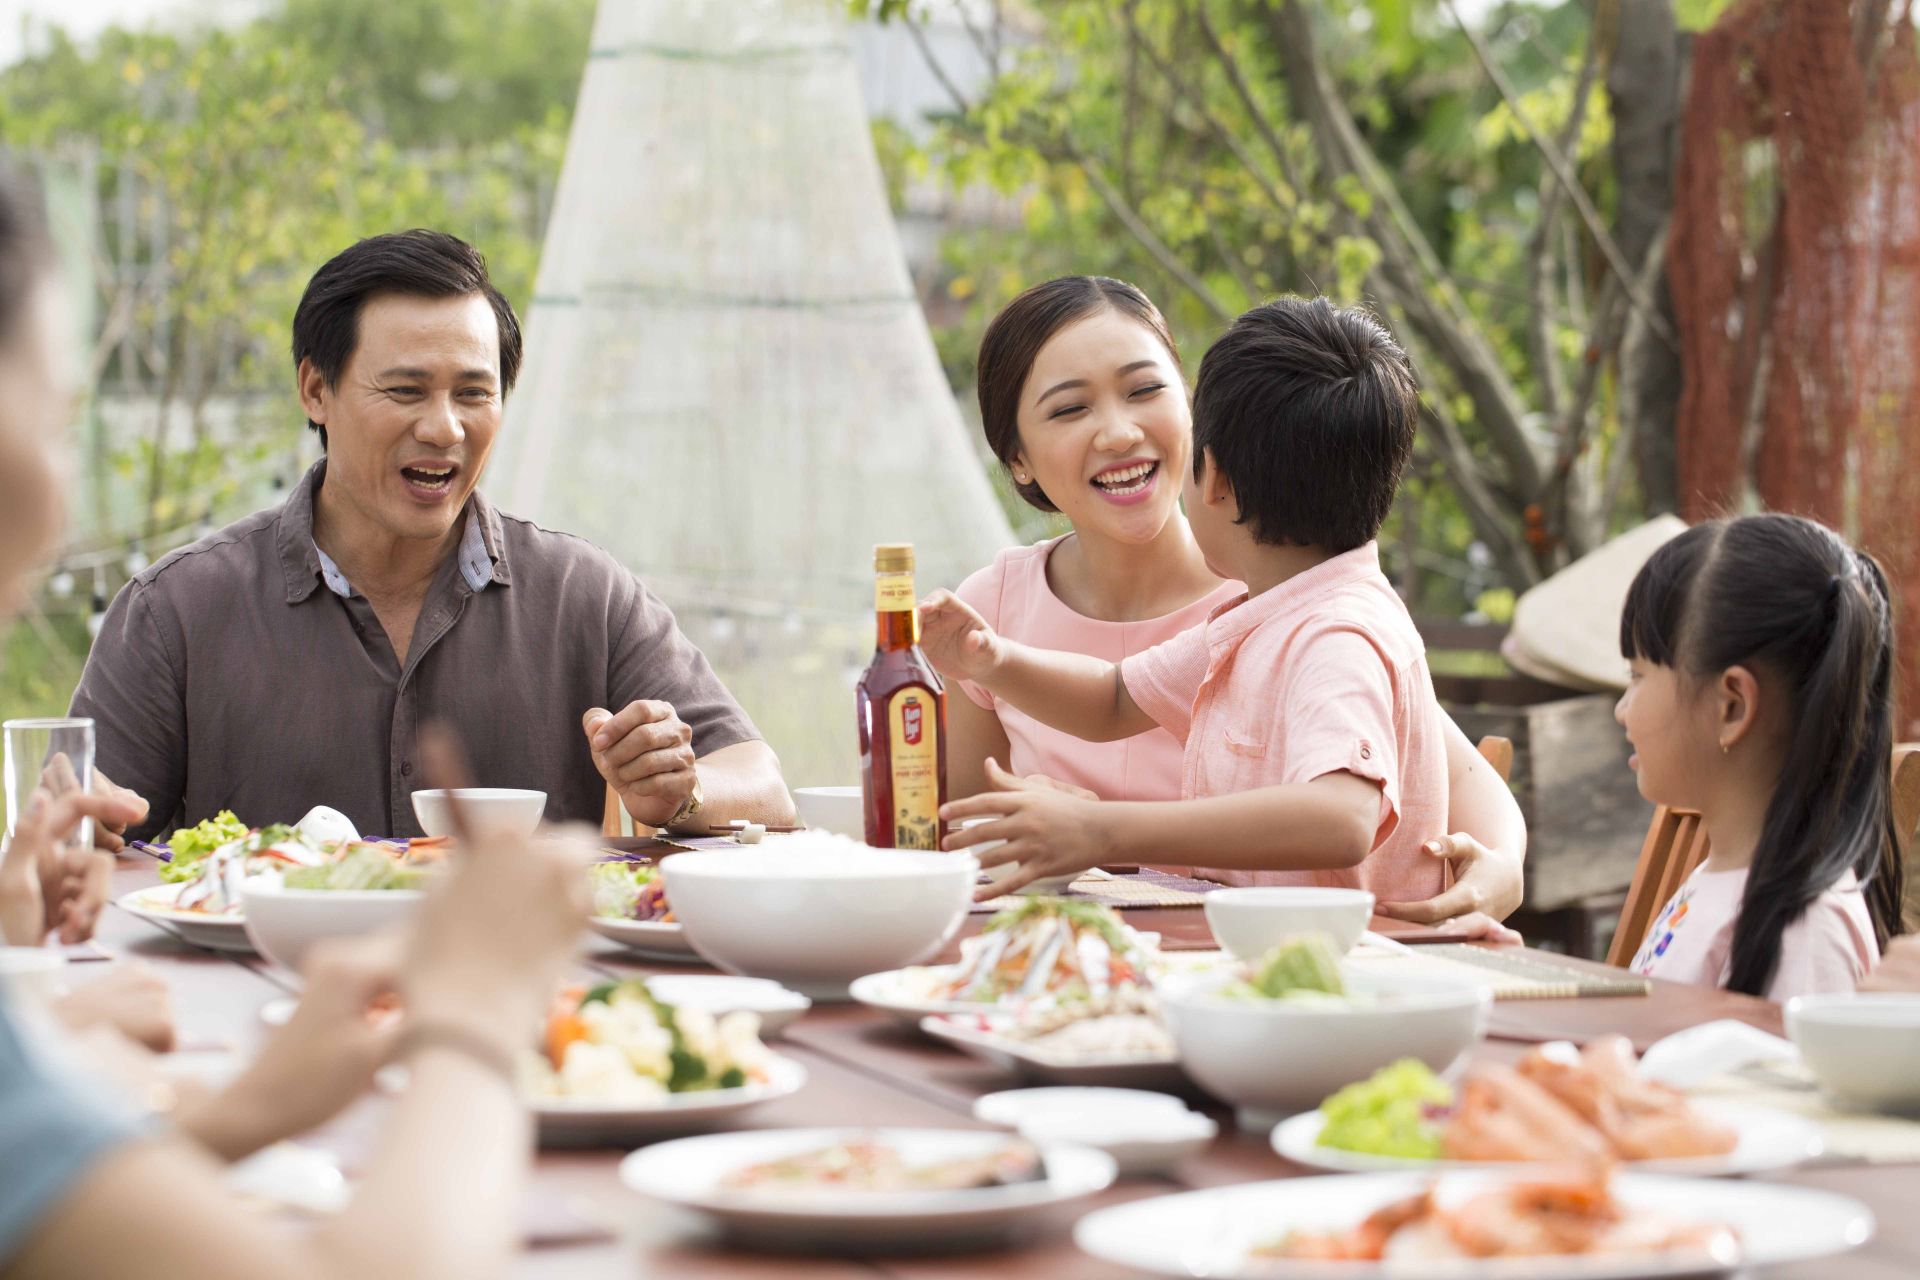 98% hộ gia đình Việt sở hữu ít nhất một sản phẩm của Masan